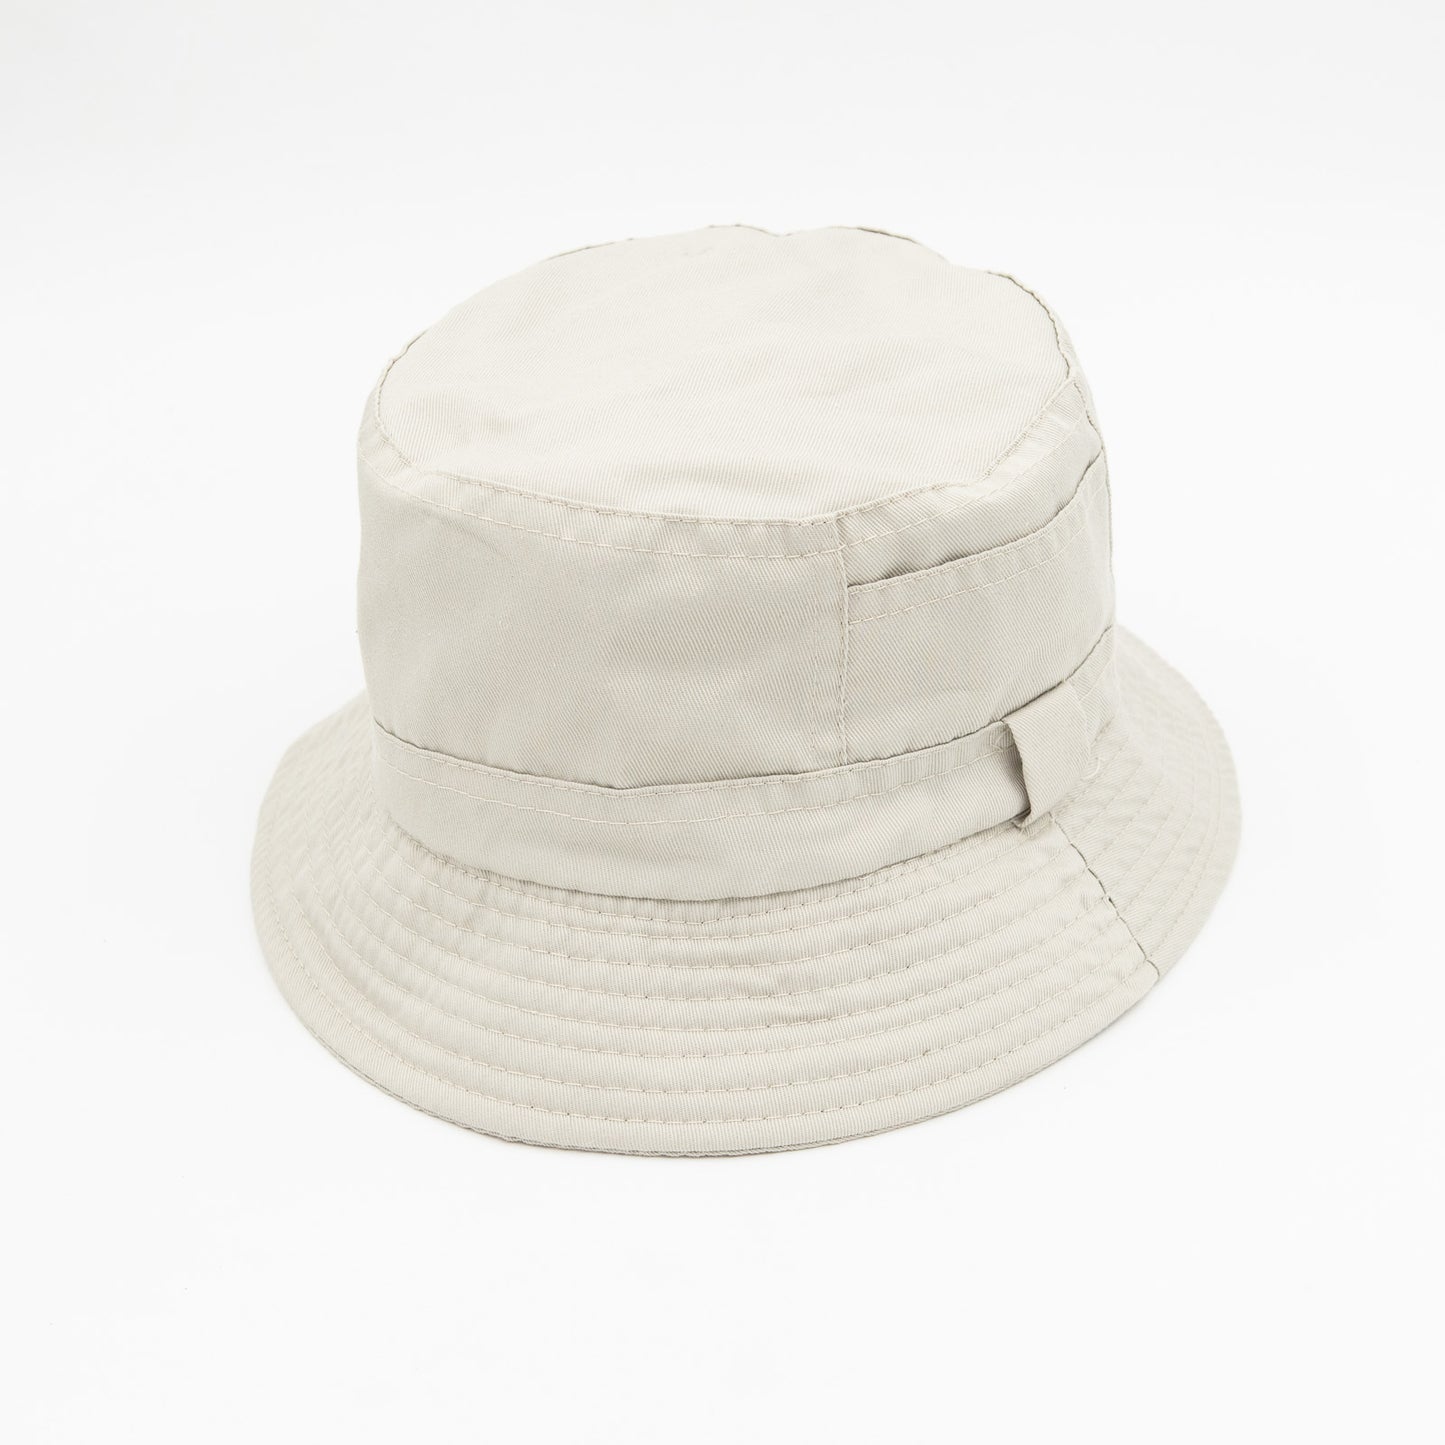 White Hiking Fishing Bucket Hats - Pantsnsox